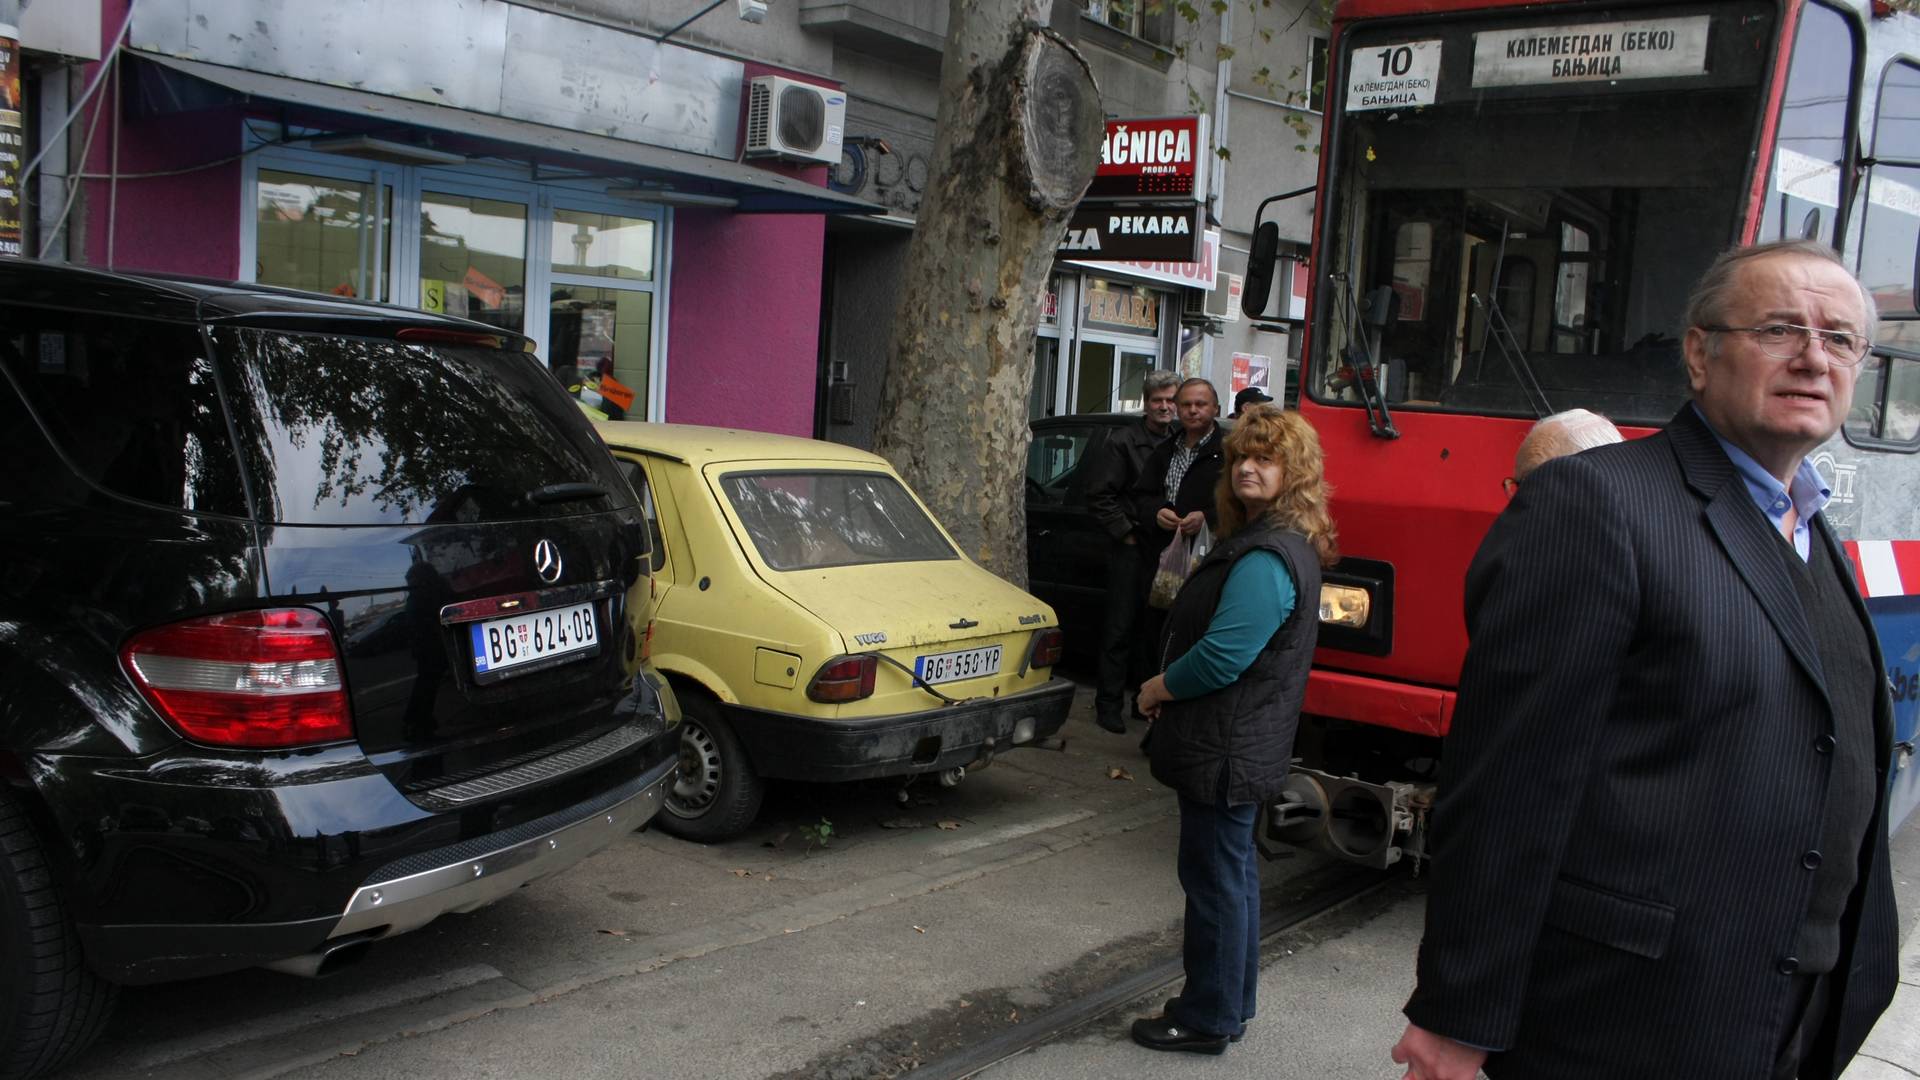 Beograđanin je parkirao auto i ostavio ljude u čudu - ovoliku bahatost ni Oko sokolovo ne može dovoljno da naplati